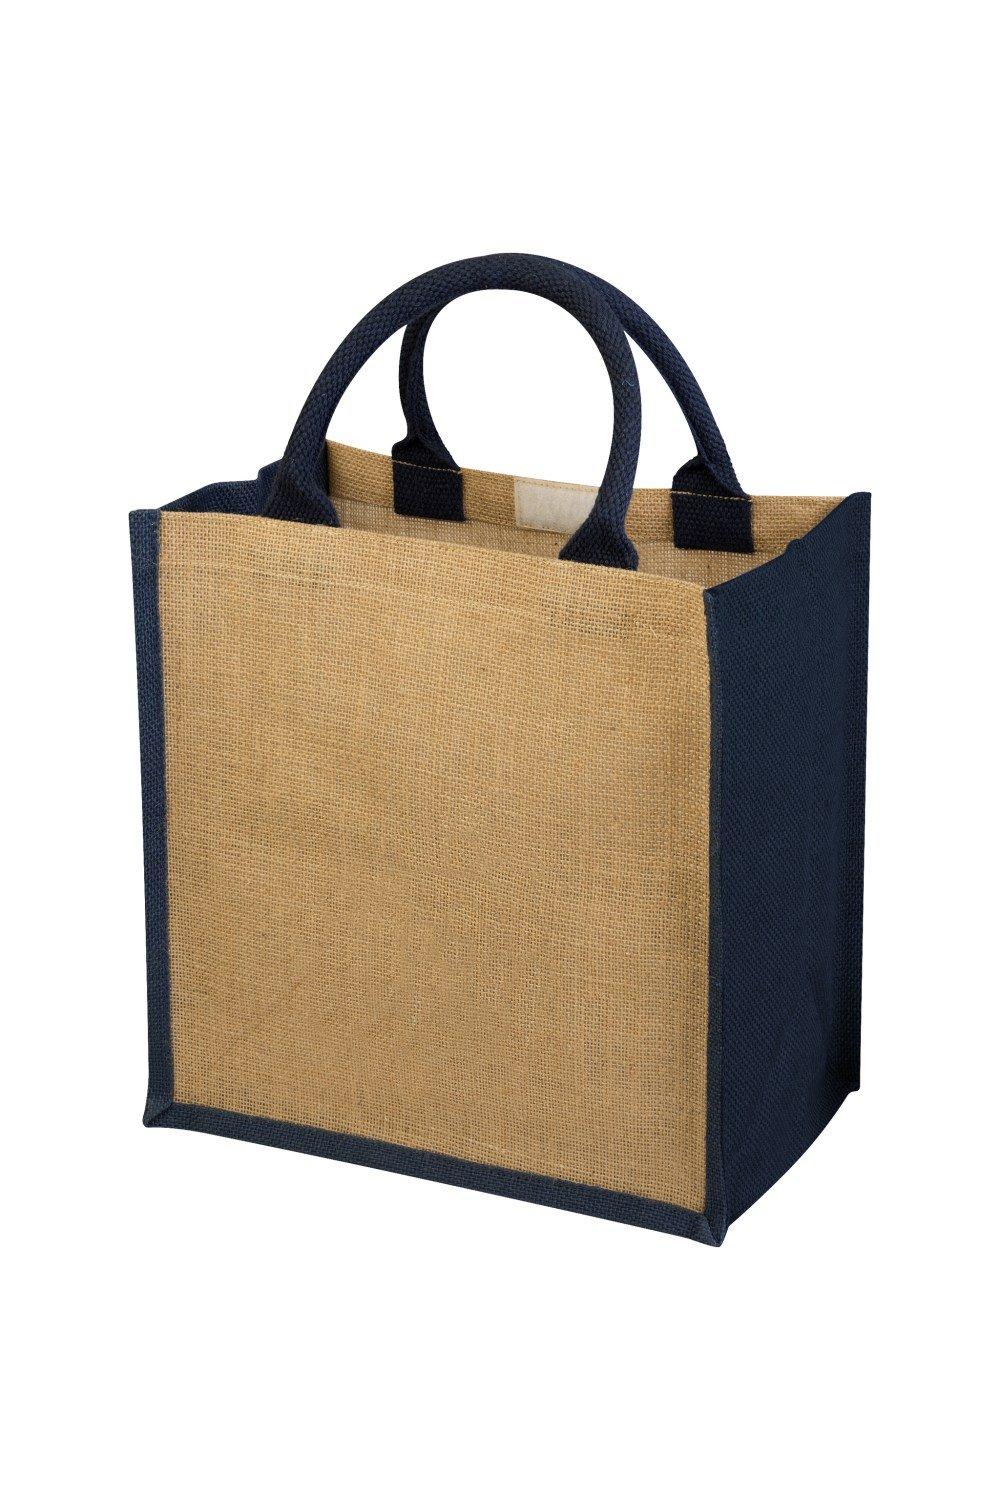 Подарочная сумка из джута Ченнаи (2 шт.) Bullet, бежевый сумка торба ручной работы из джута синяя juli jute